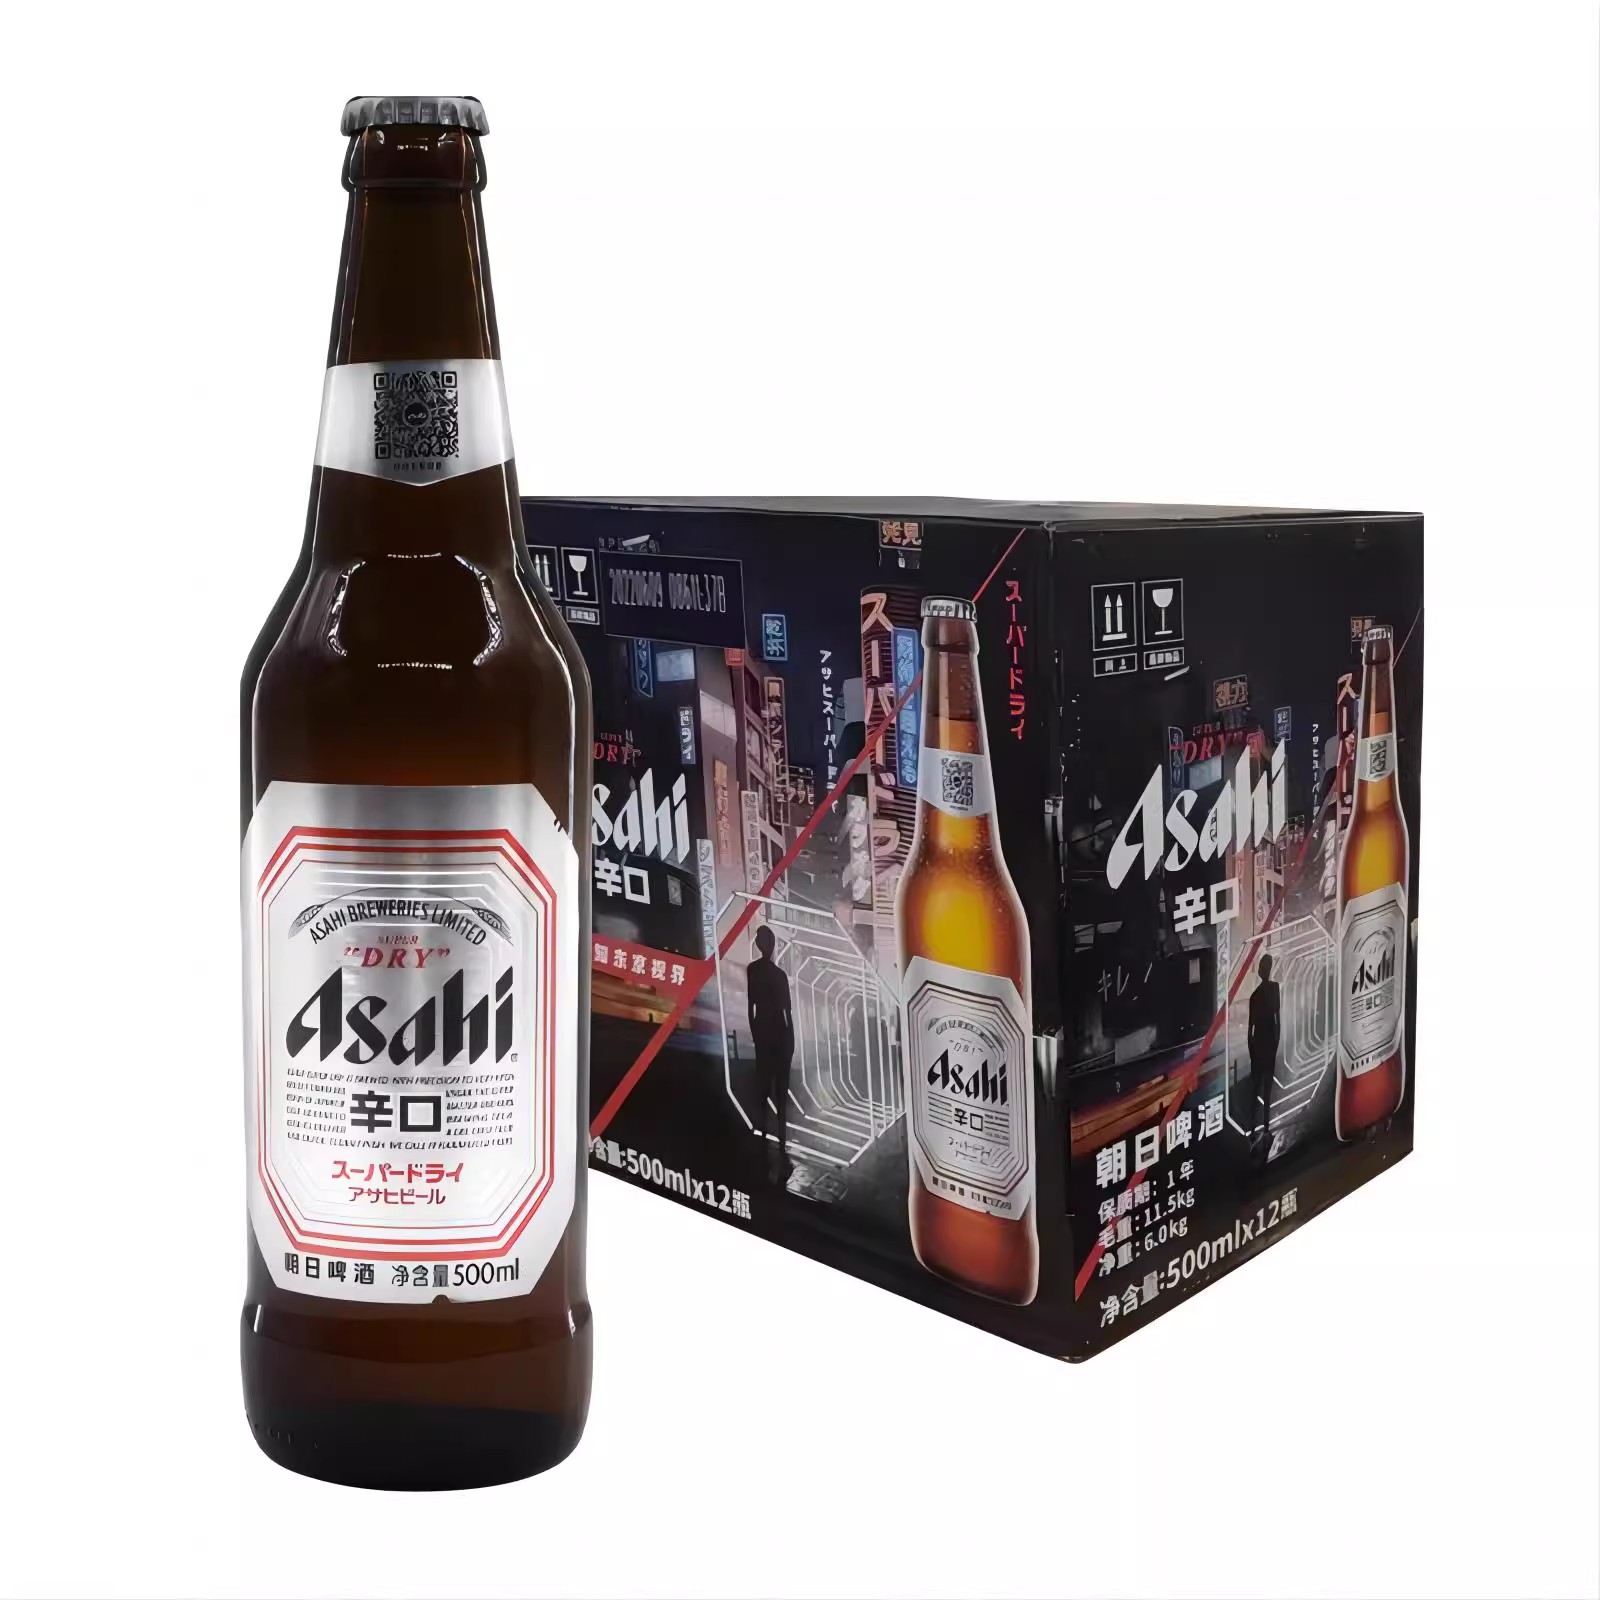 【国产】日本风味朝日啤酒超爽生啤酒